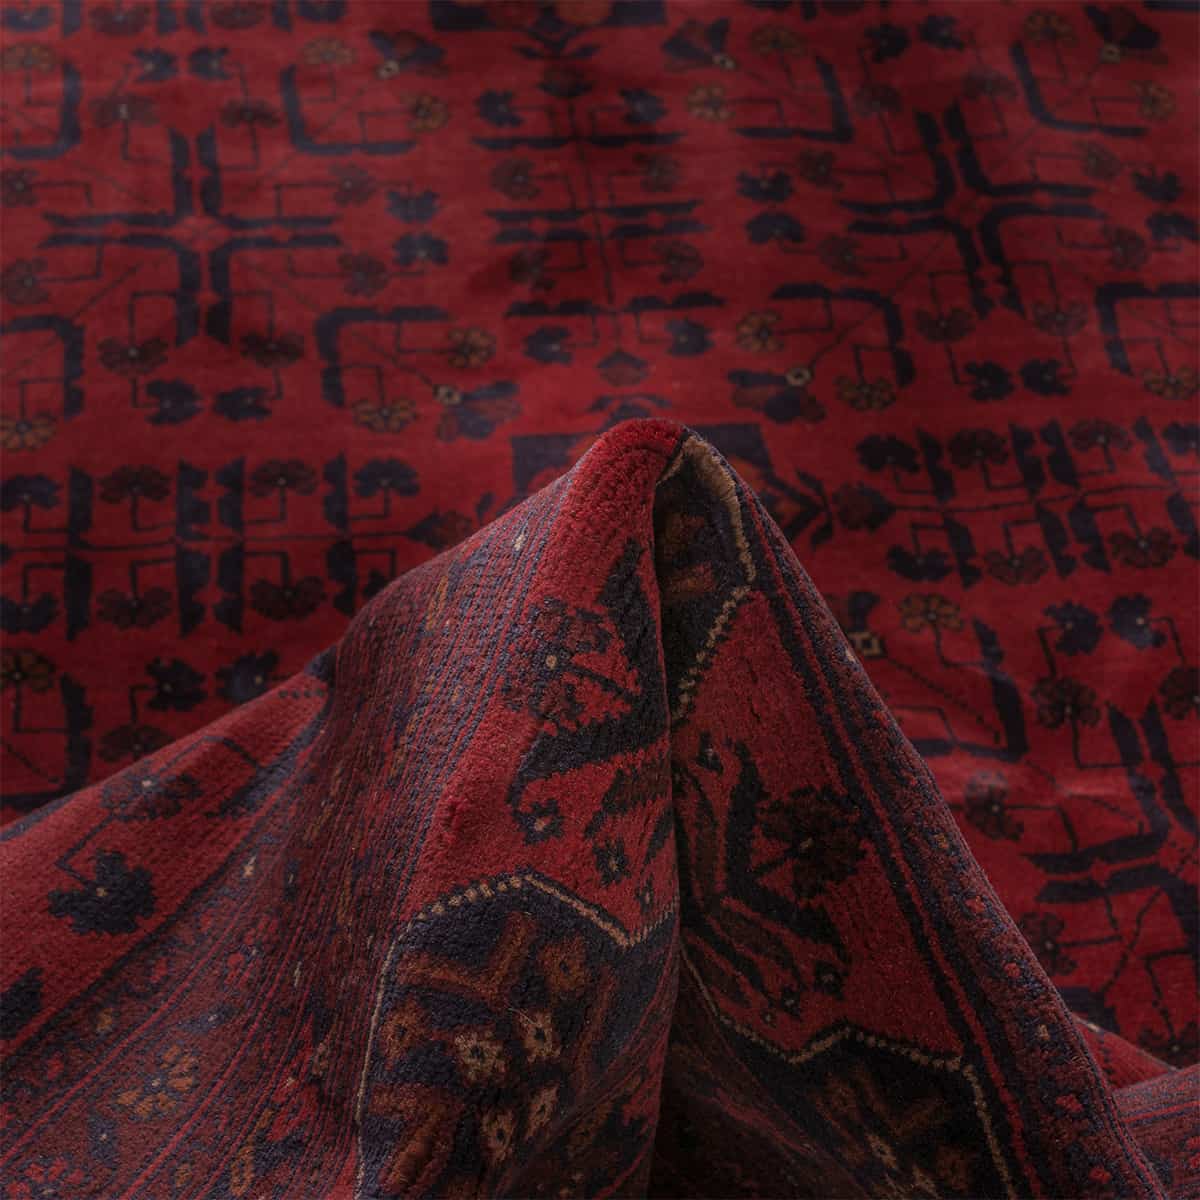  סופר חל ממדי בלג'יק 00 אדום 258x346 | השטיח האדום 